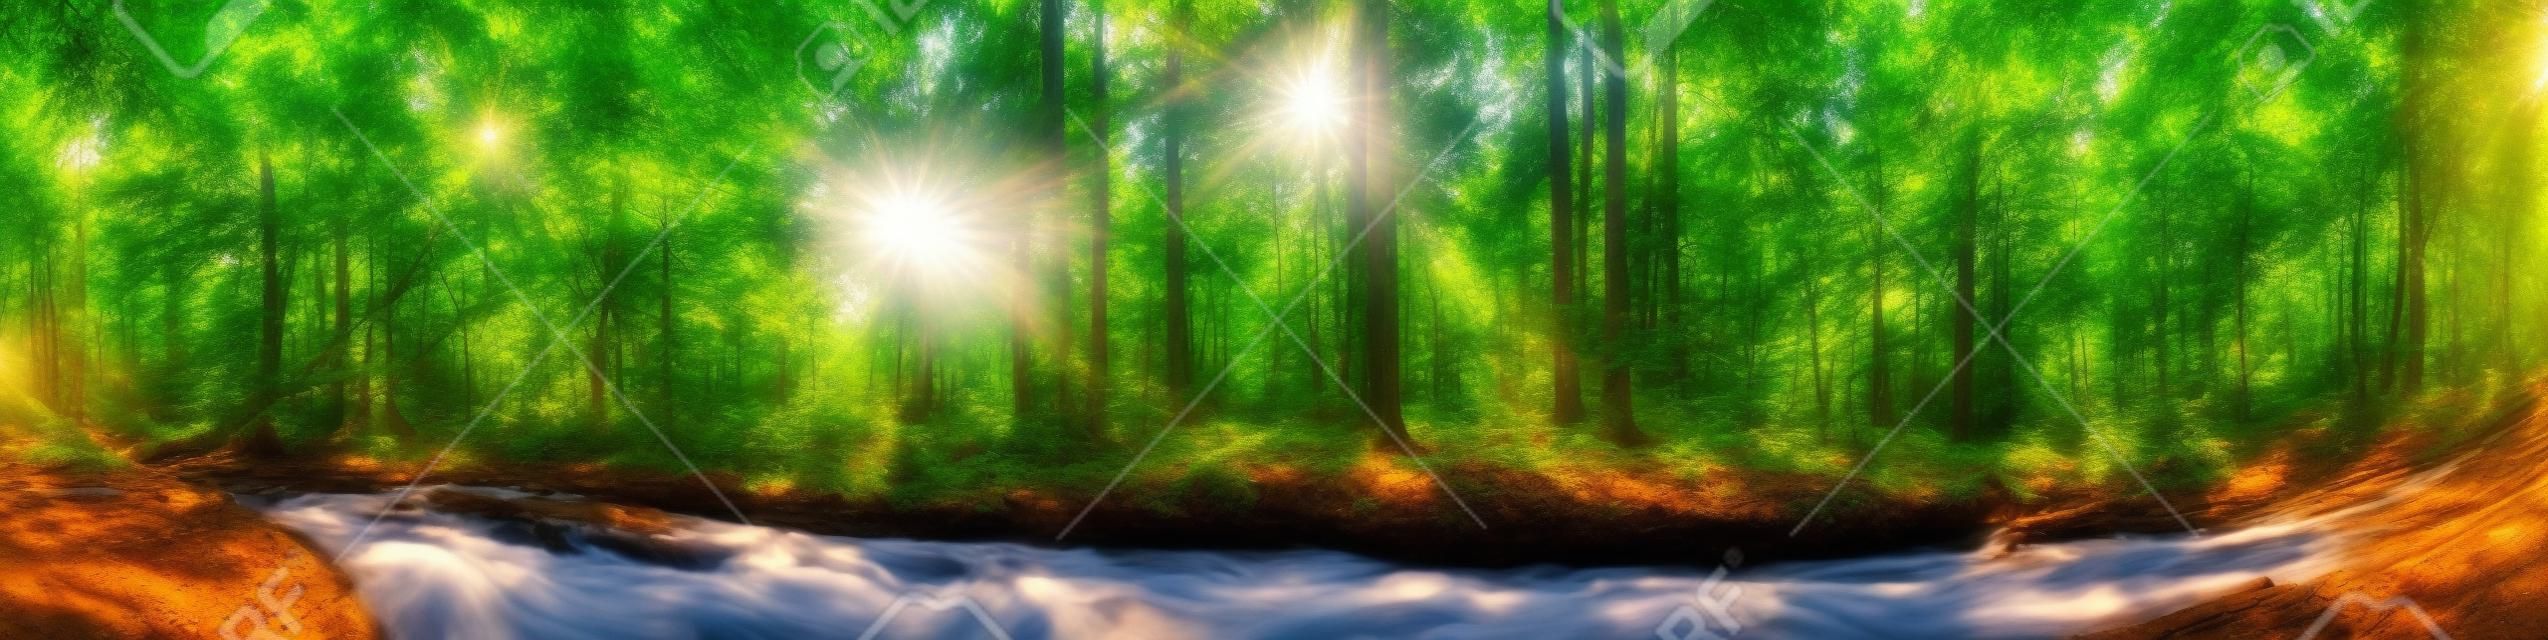 Piękna panorama lasu z drzewami, strumieniem i słońcem